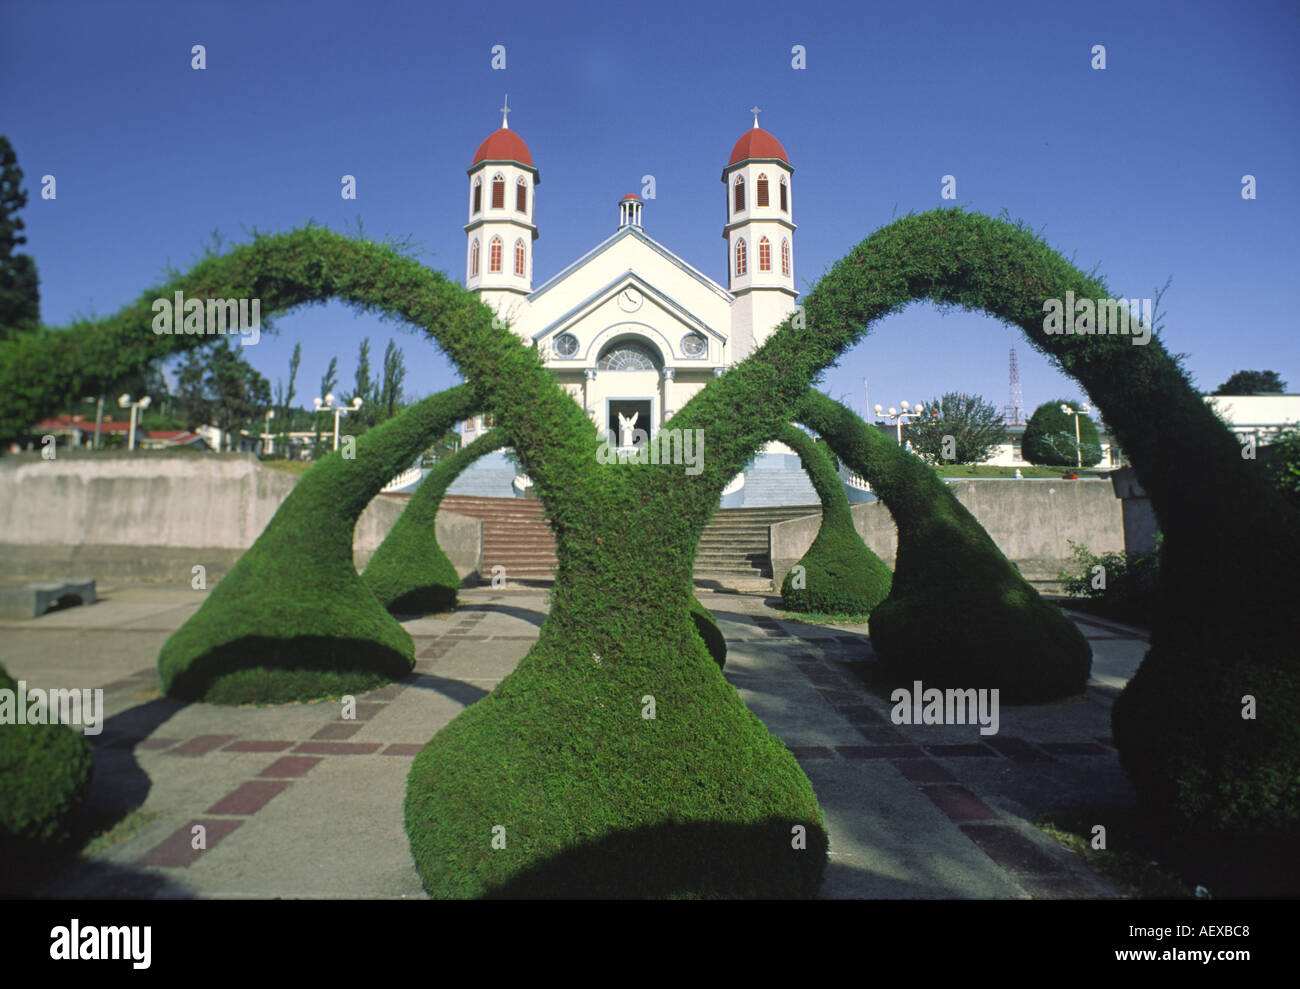 Costa Rica Zacero church artifical hedge arches Stock Photo